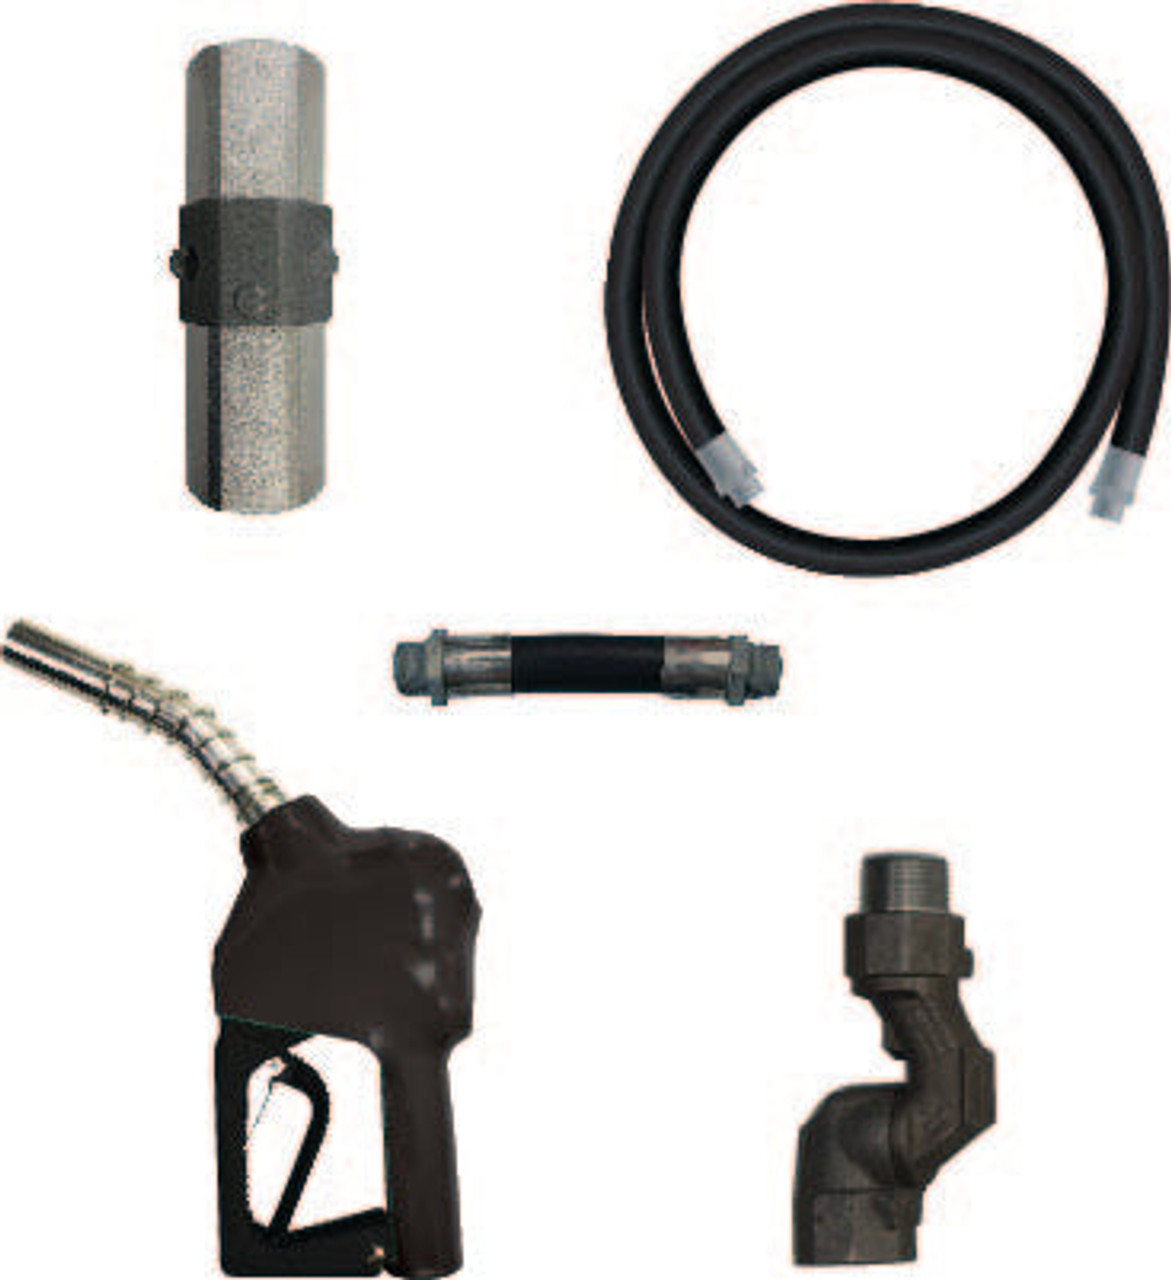 FDHK-GAS - 3/4" Gas Hanging Hardware KitColor: Black